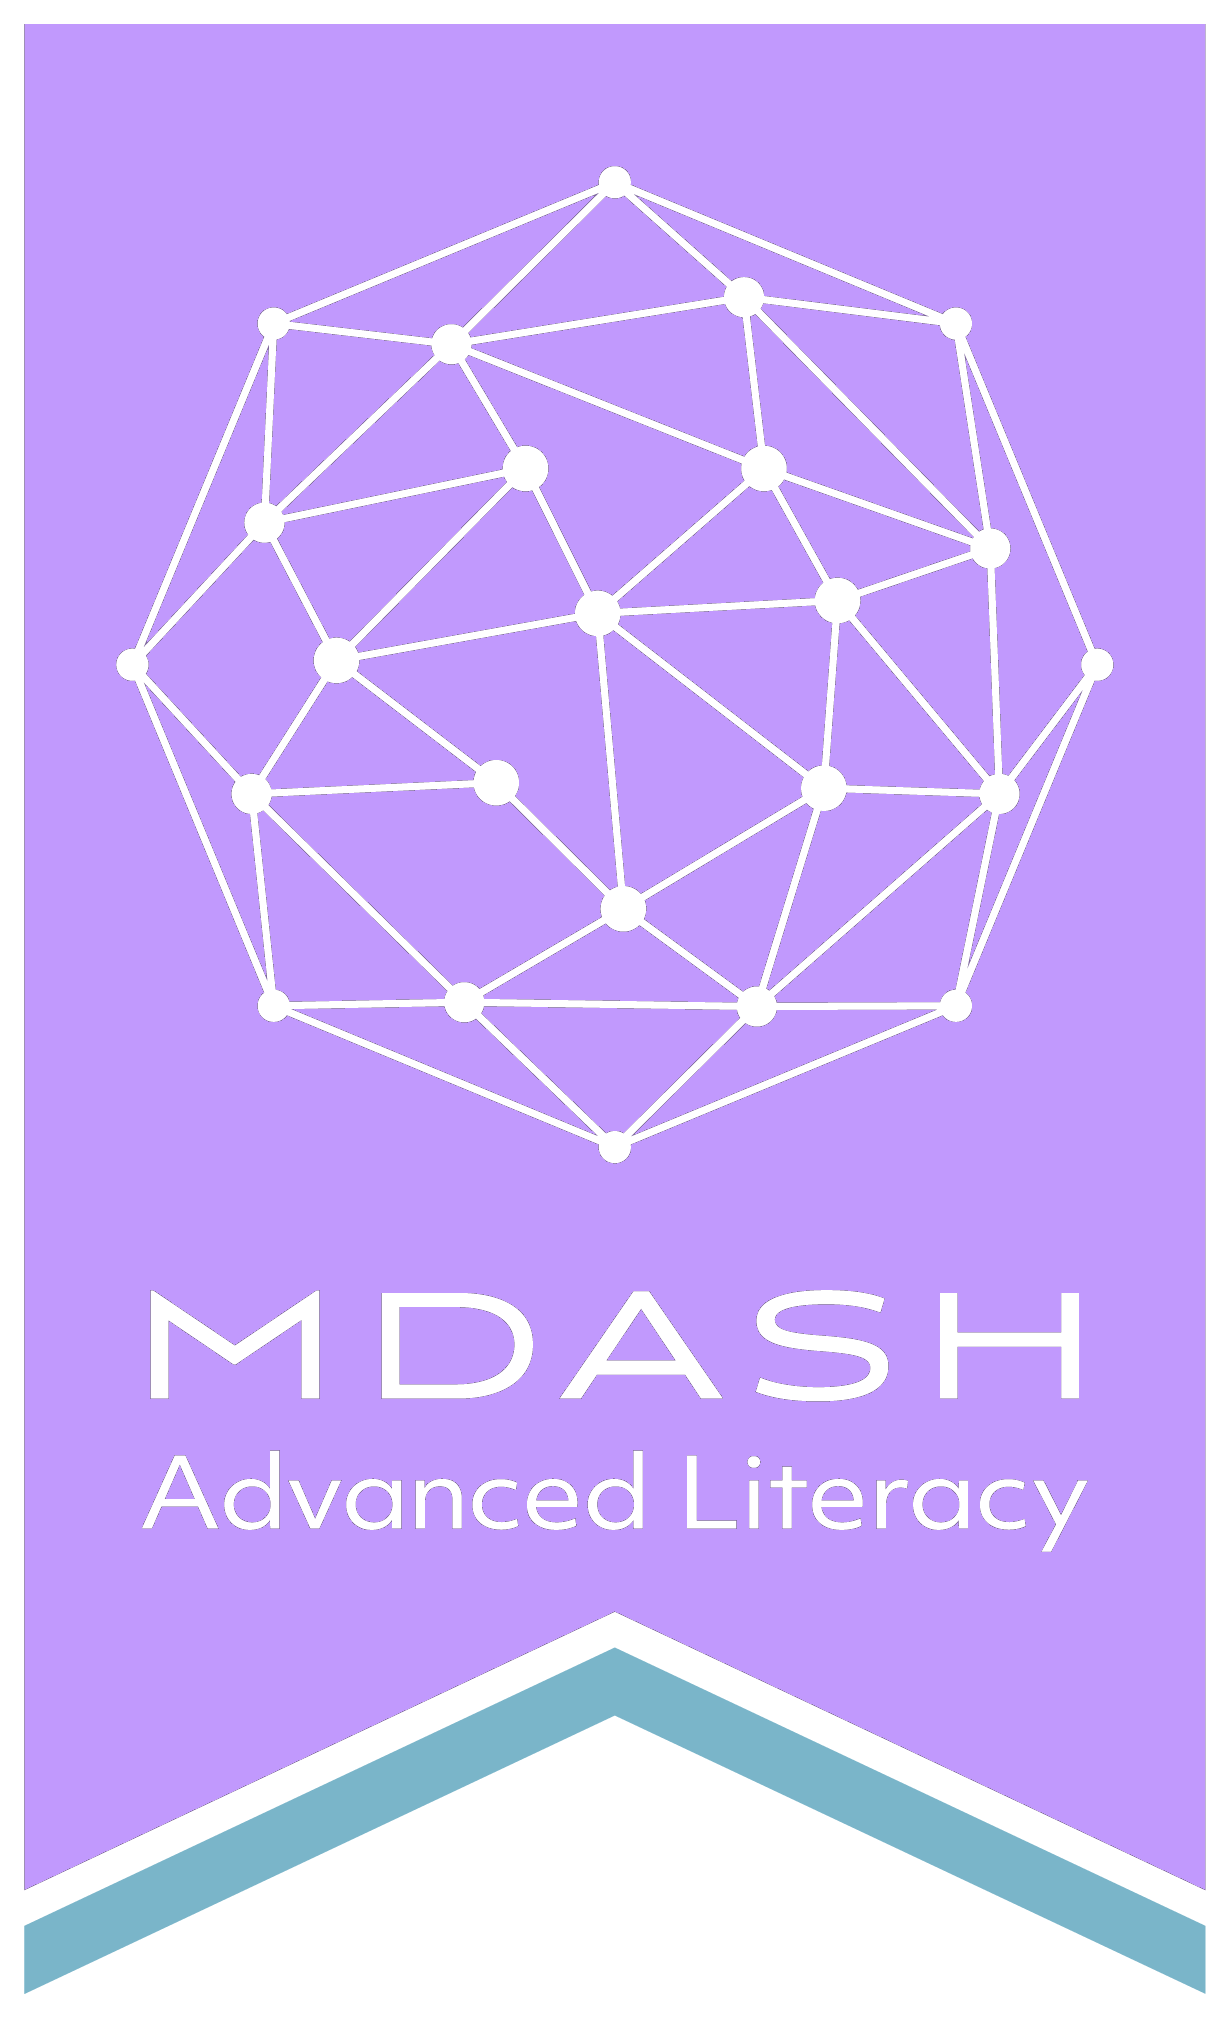 MDASH_logo.png